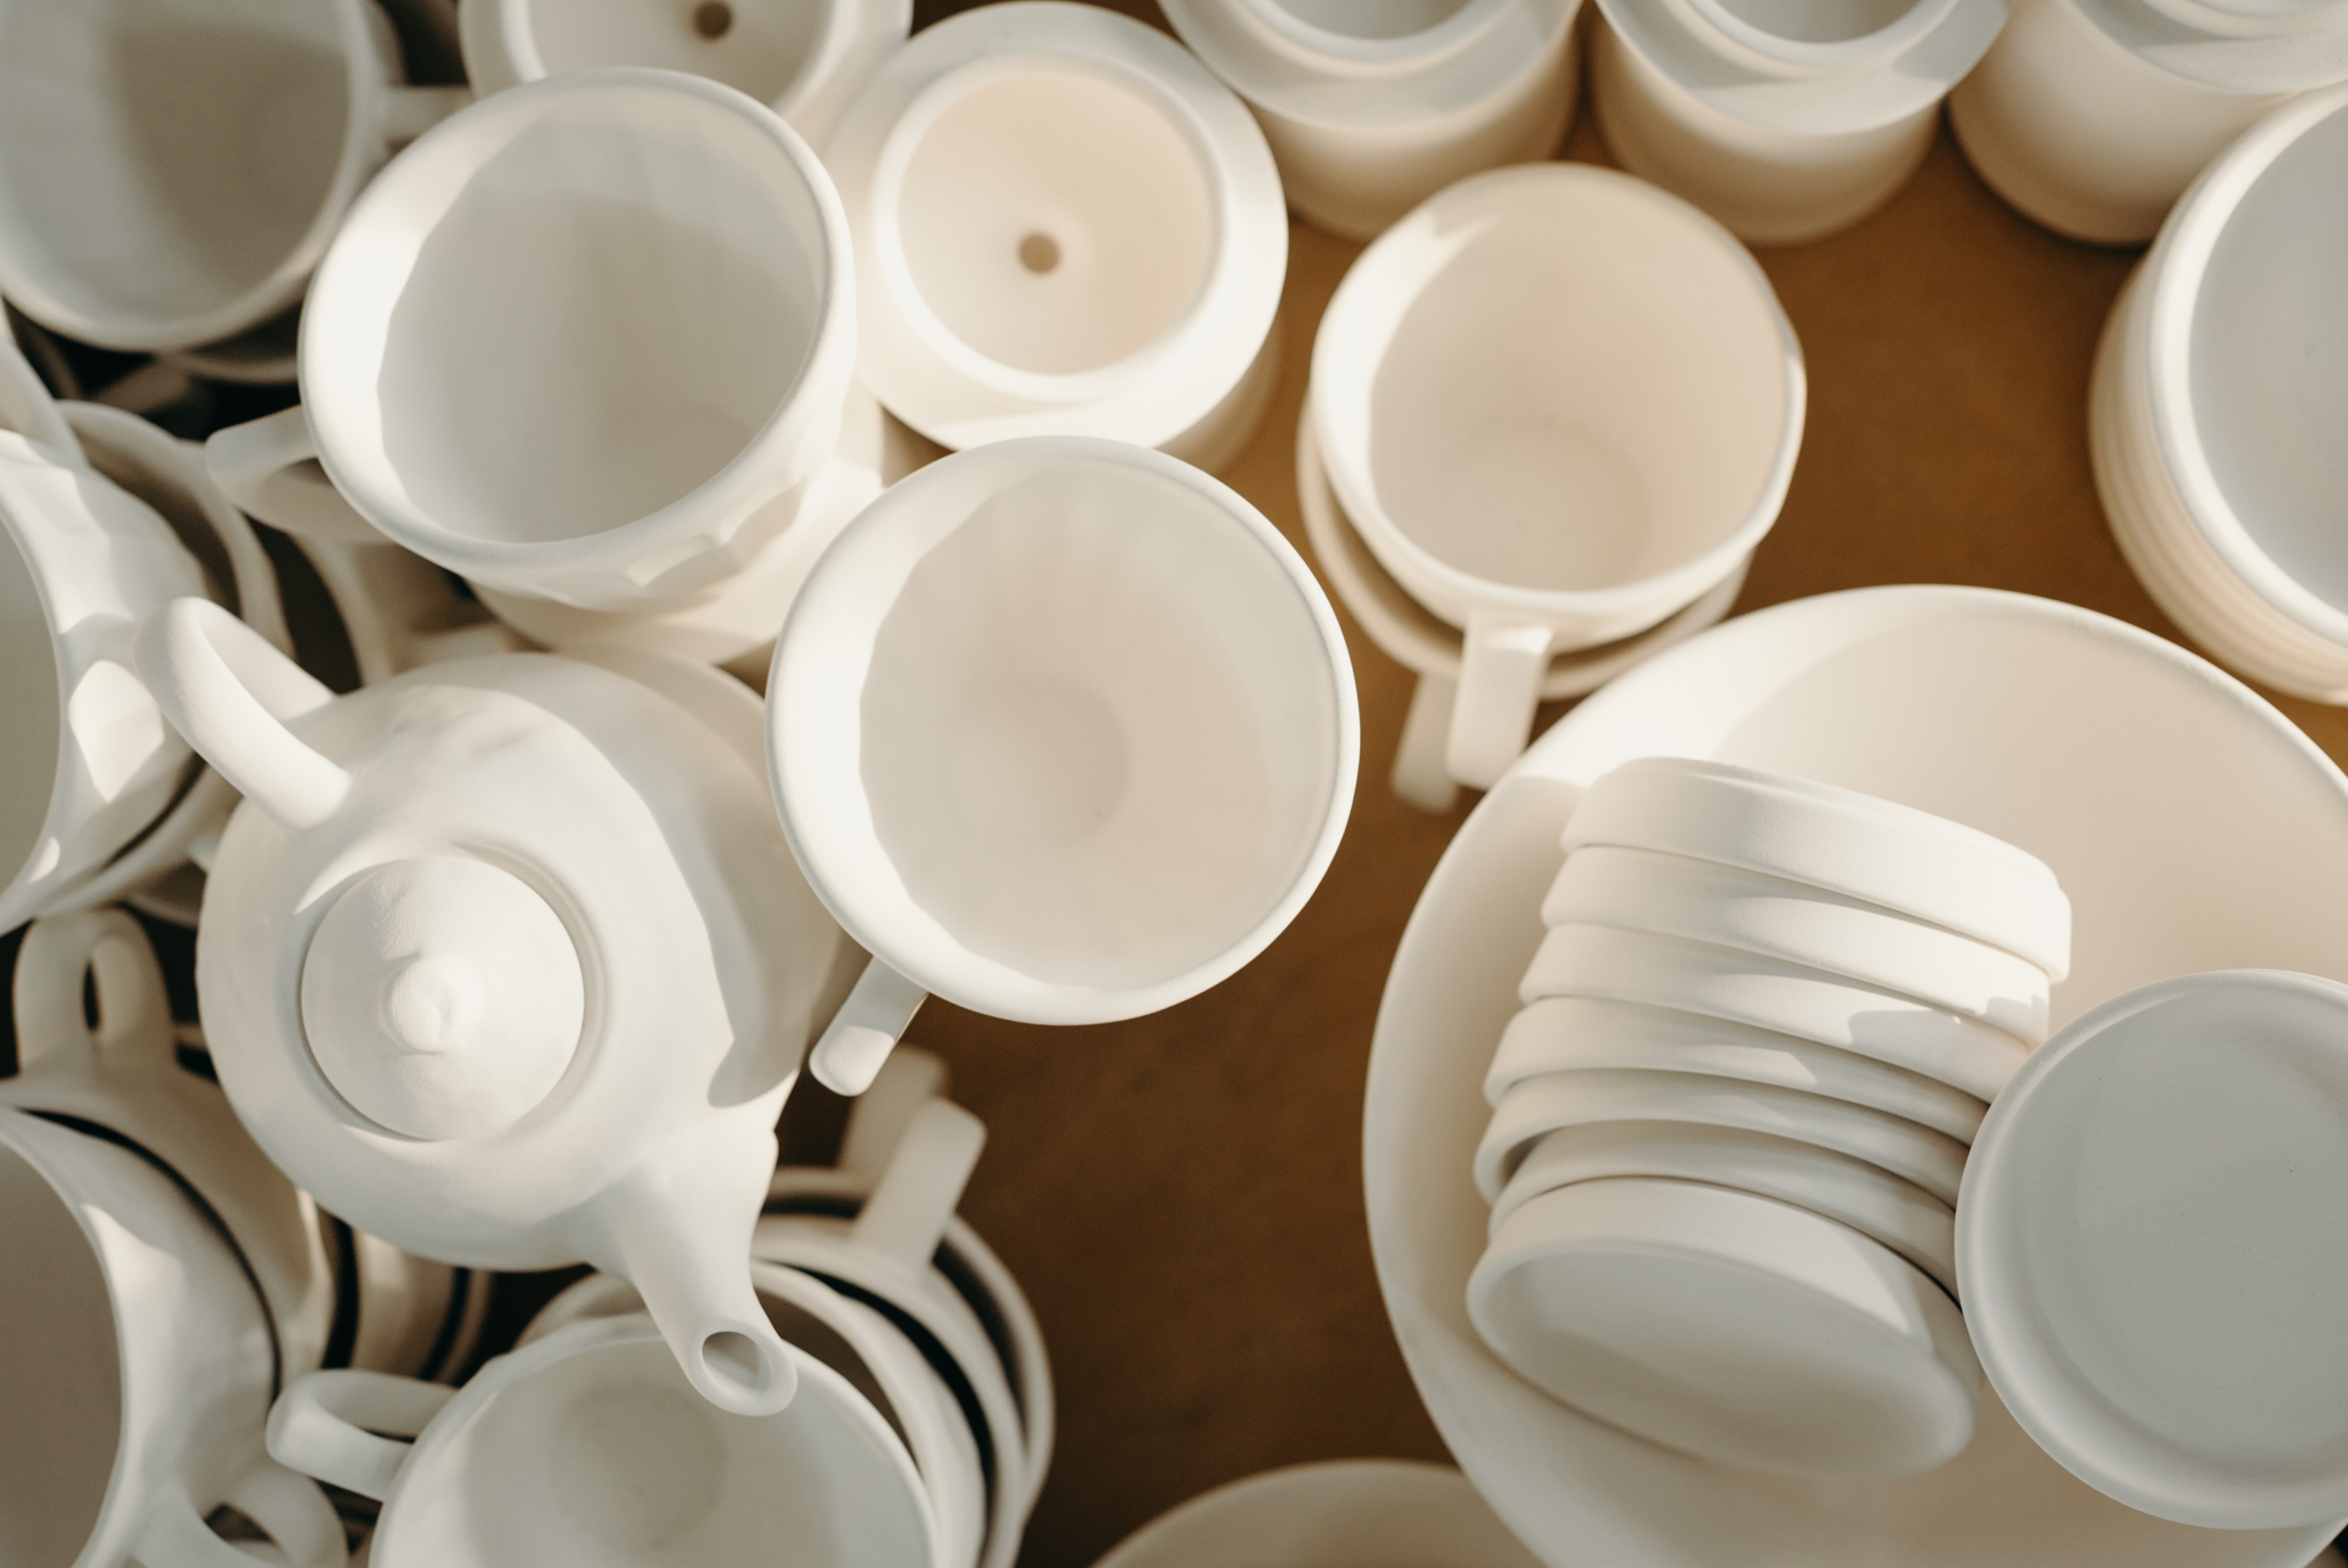 Tasses et mugs en céramique - Poterie faite à la main en France – Les  Poteries de Sylvie